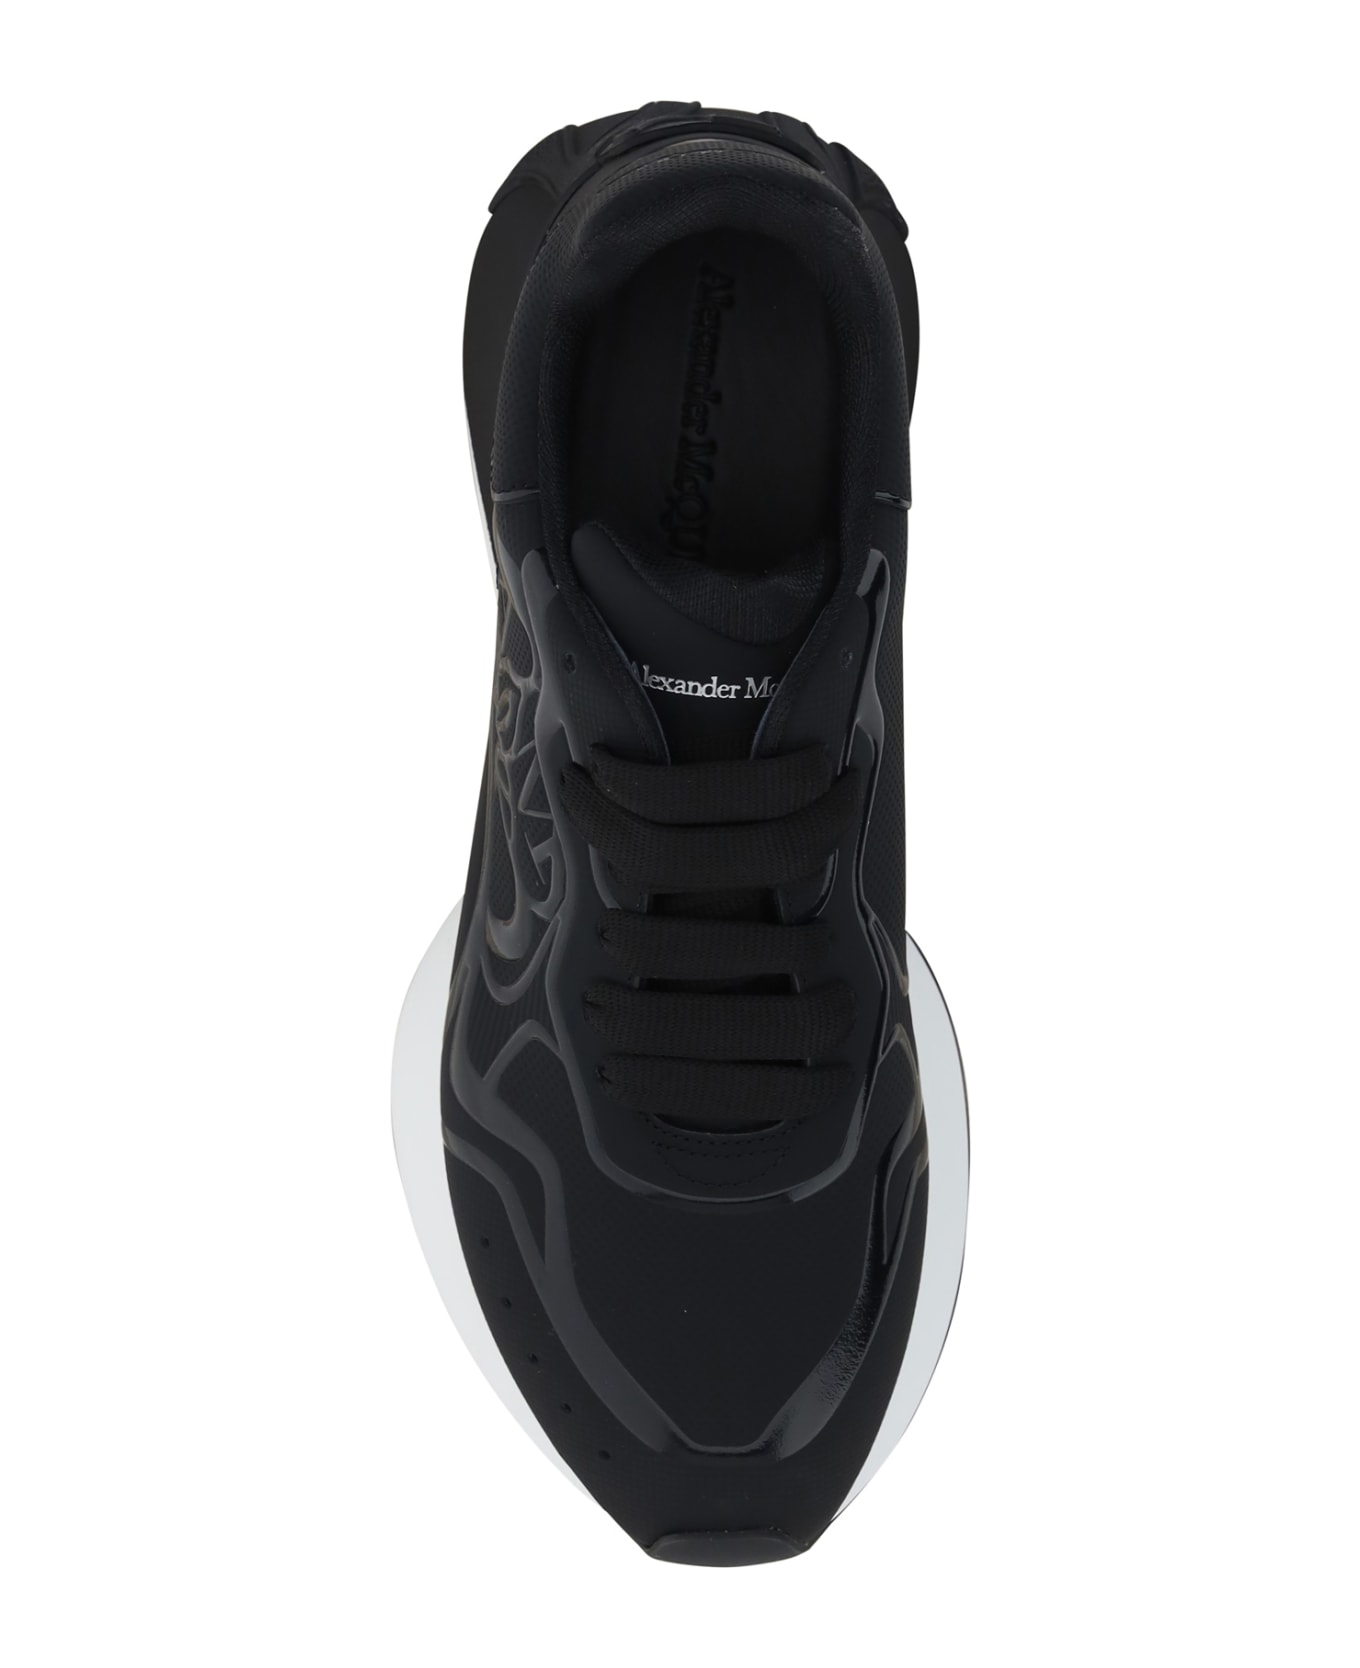 Alexander McQueen Sprint Runner Sneaker - Black/white スニーカー